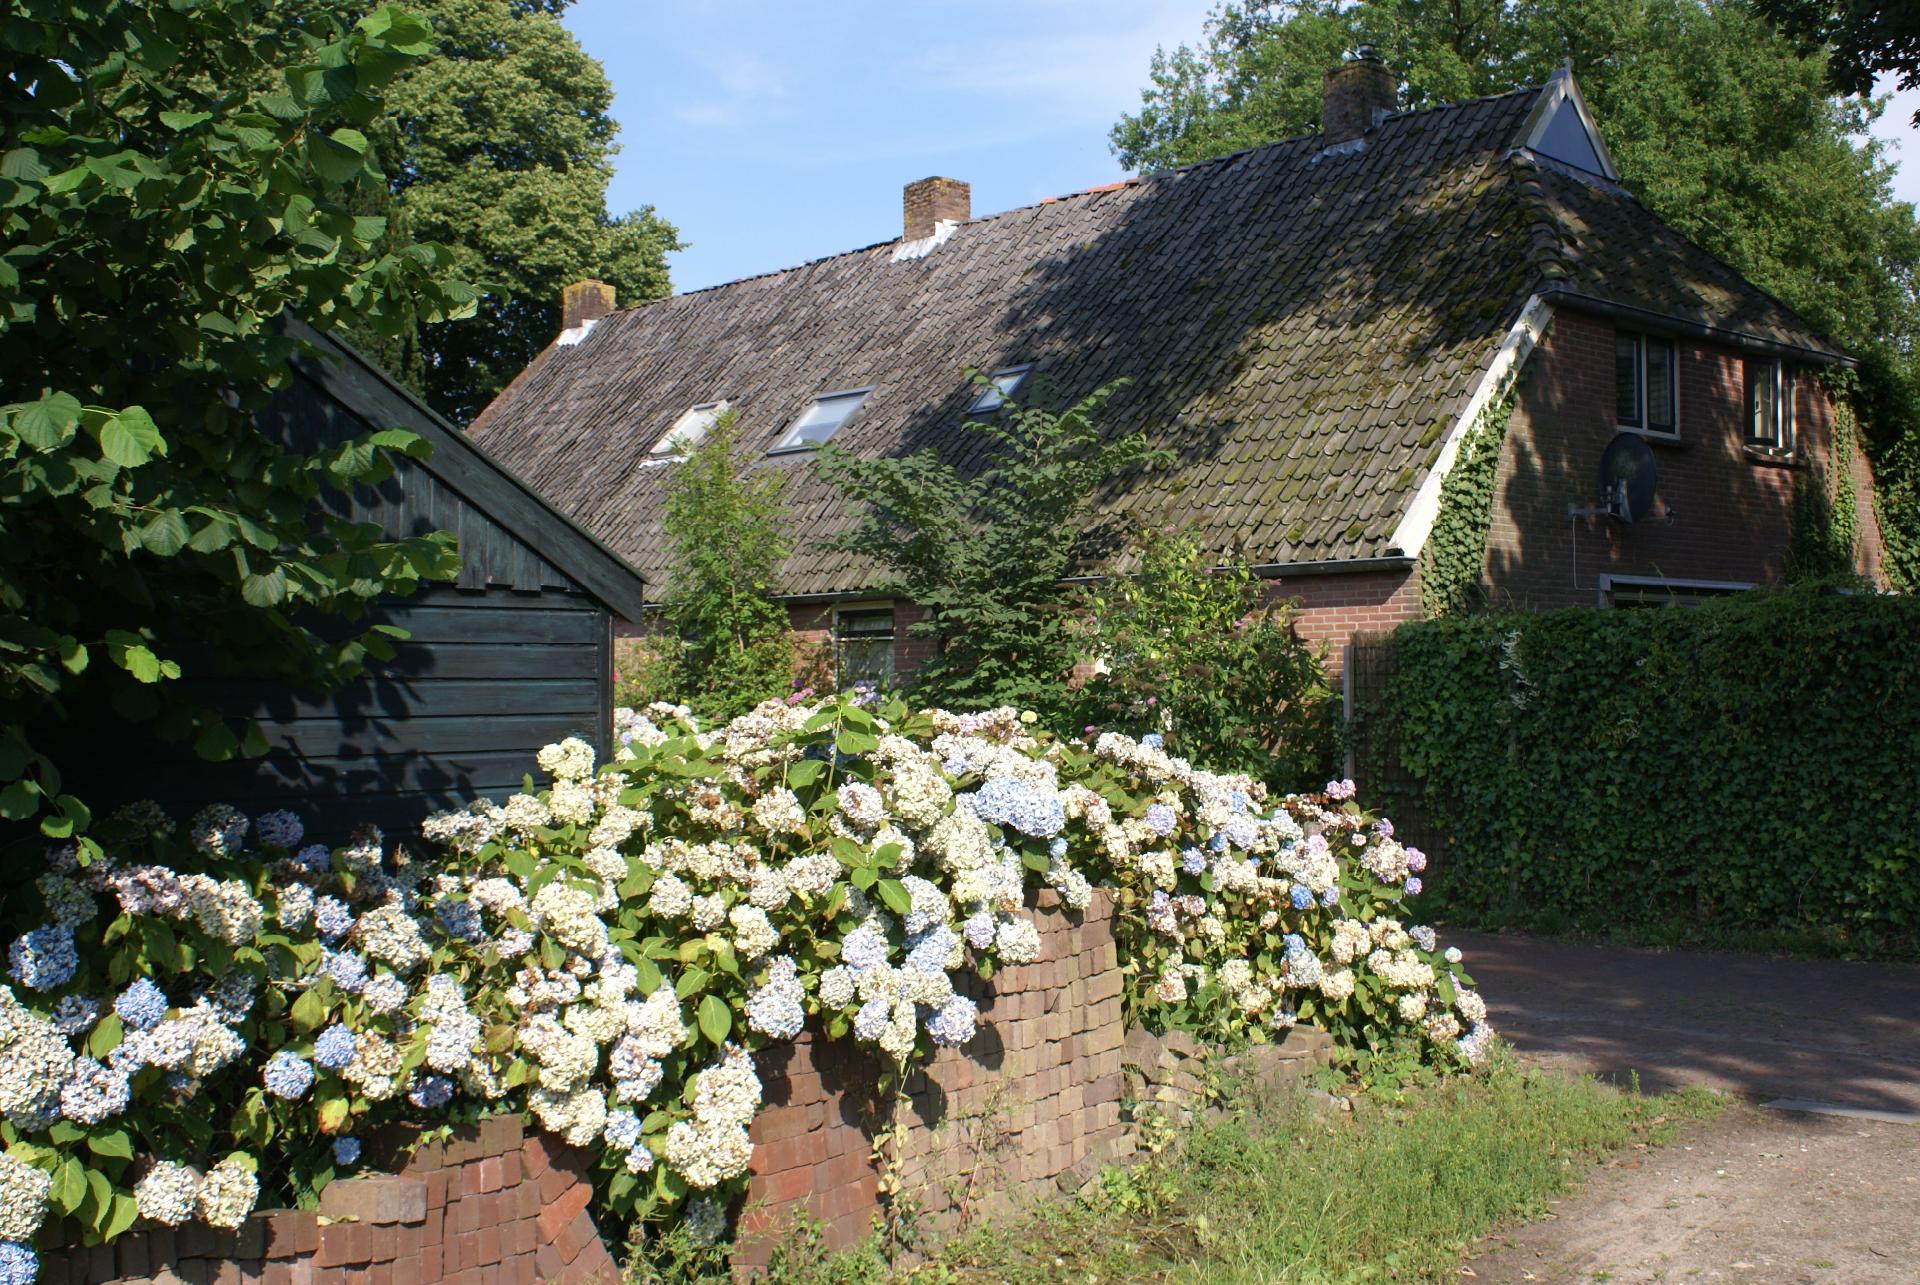 Ferienhaus in Diever mit Garten, Terrasse und Gril Ferienhaus in den Niederlande